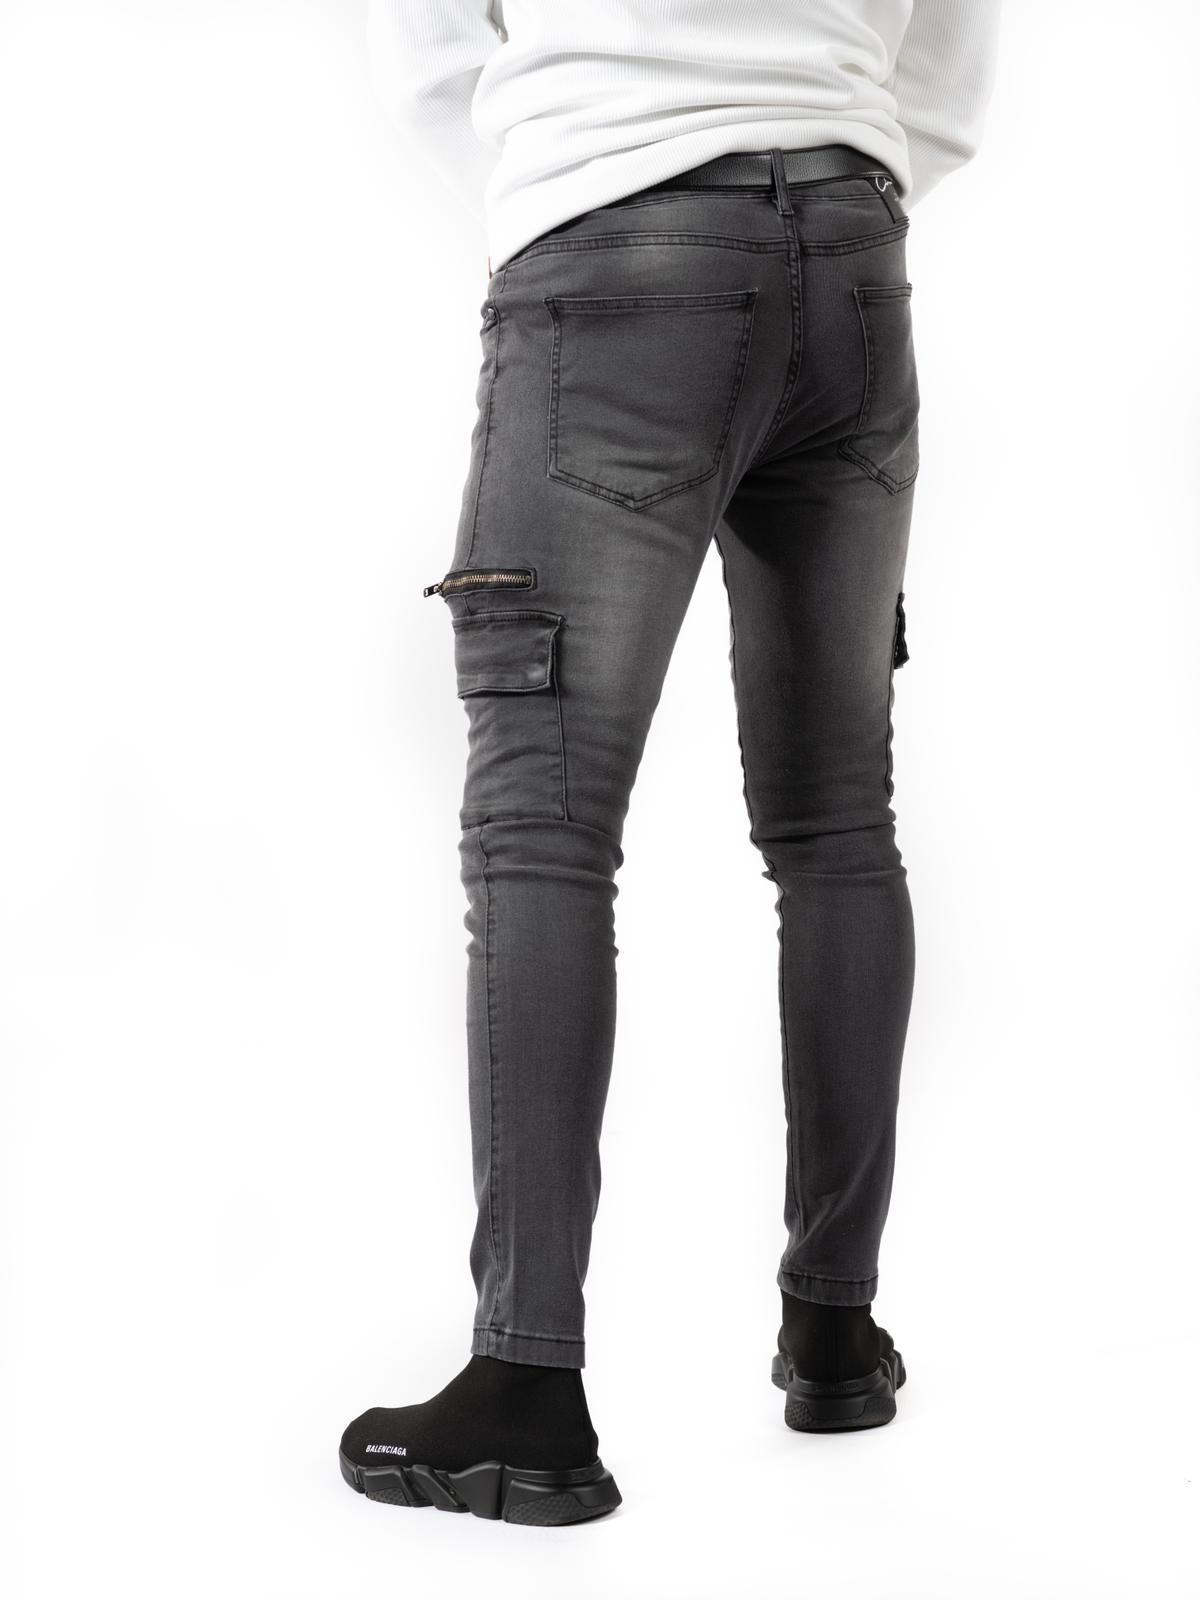 Dusty Grey Cargo Stretchy Skinny Jeans - Vox Gentè